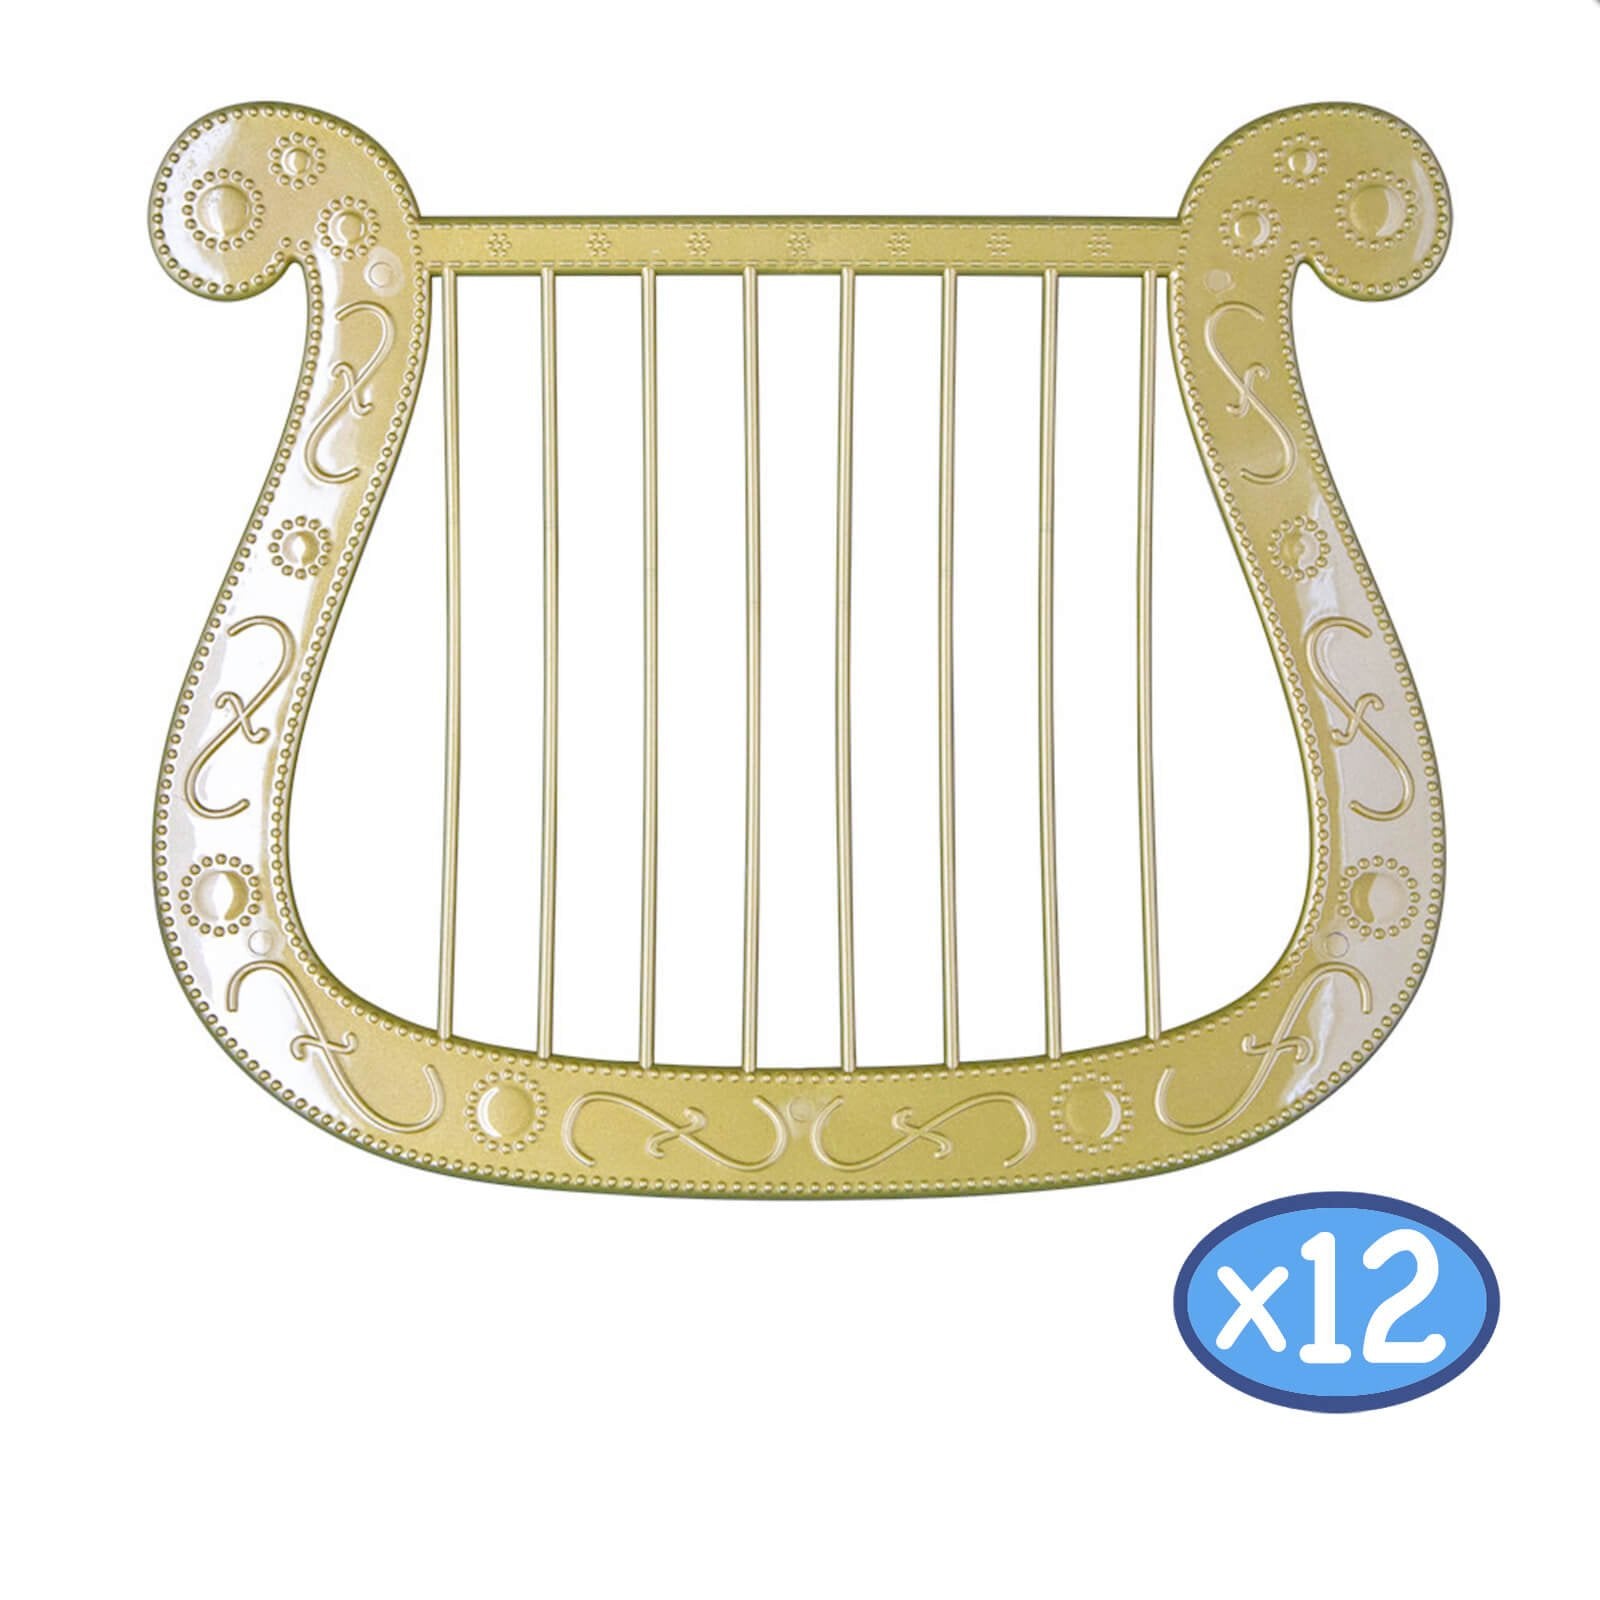 Mr Crimbo 12 x Gold Angels Harp Accessory Nativity Goddess Saint - MrCrimbo.co.uk -WKDXM-4688_12 - -bauble necklace